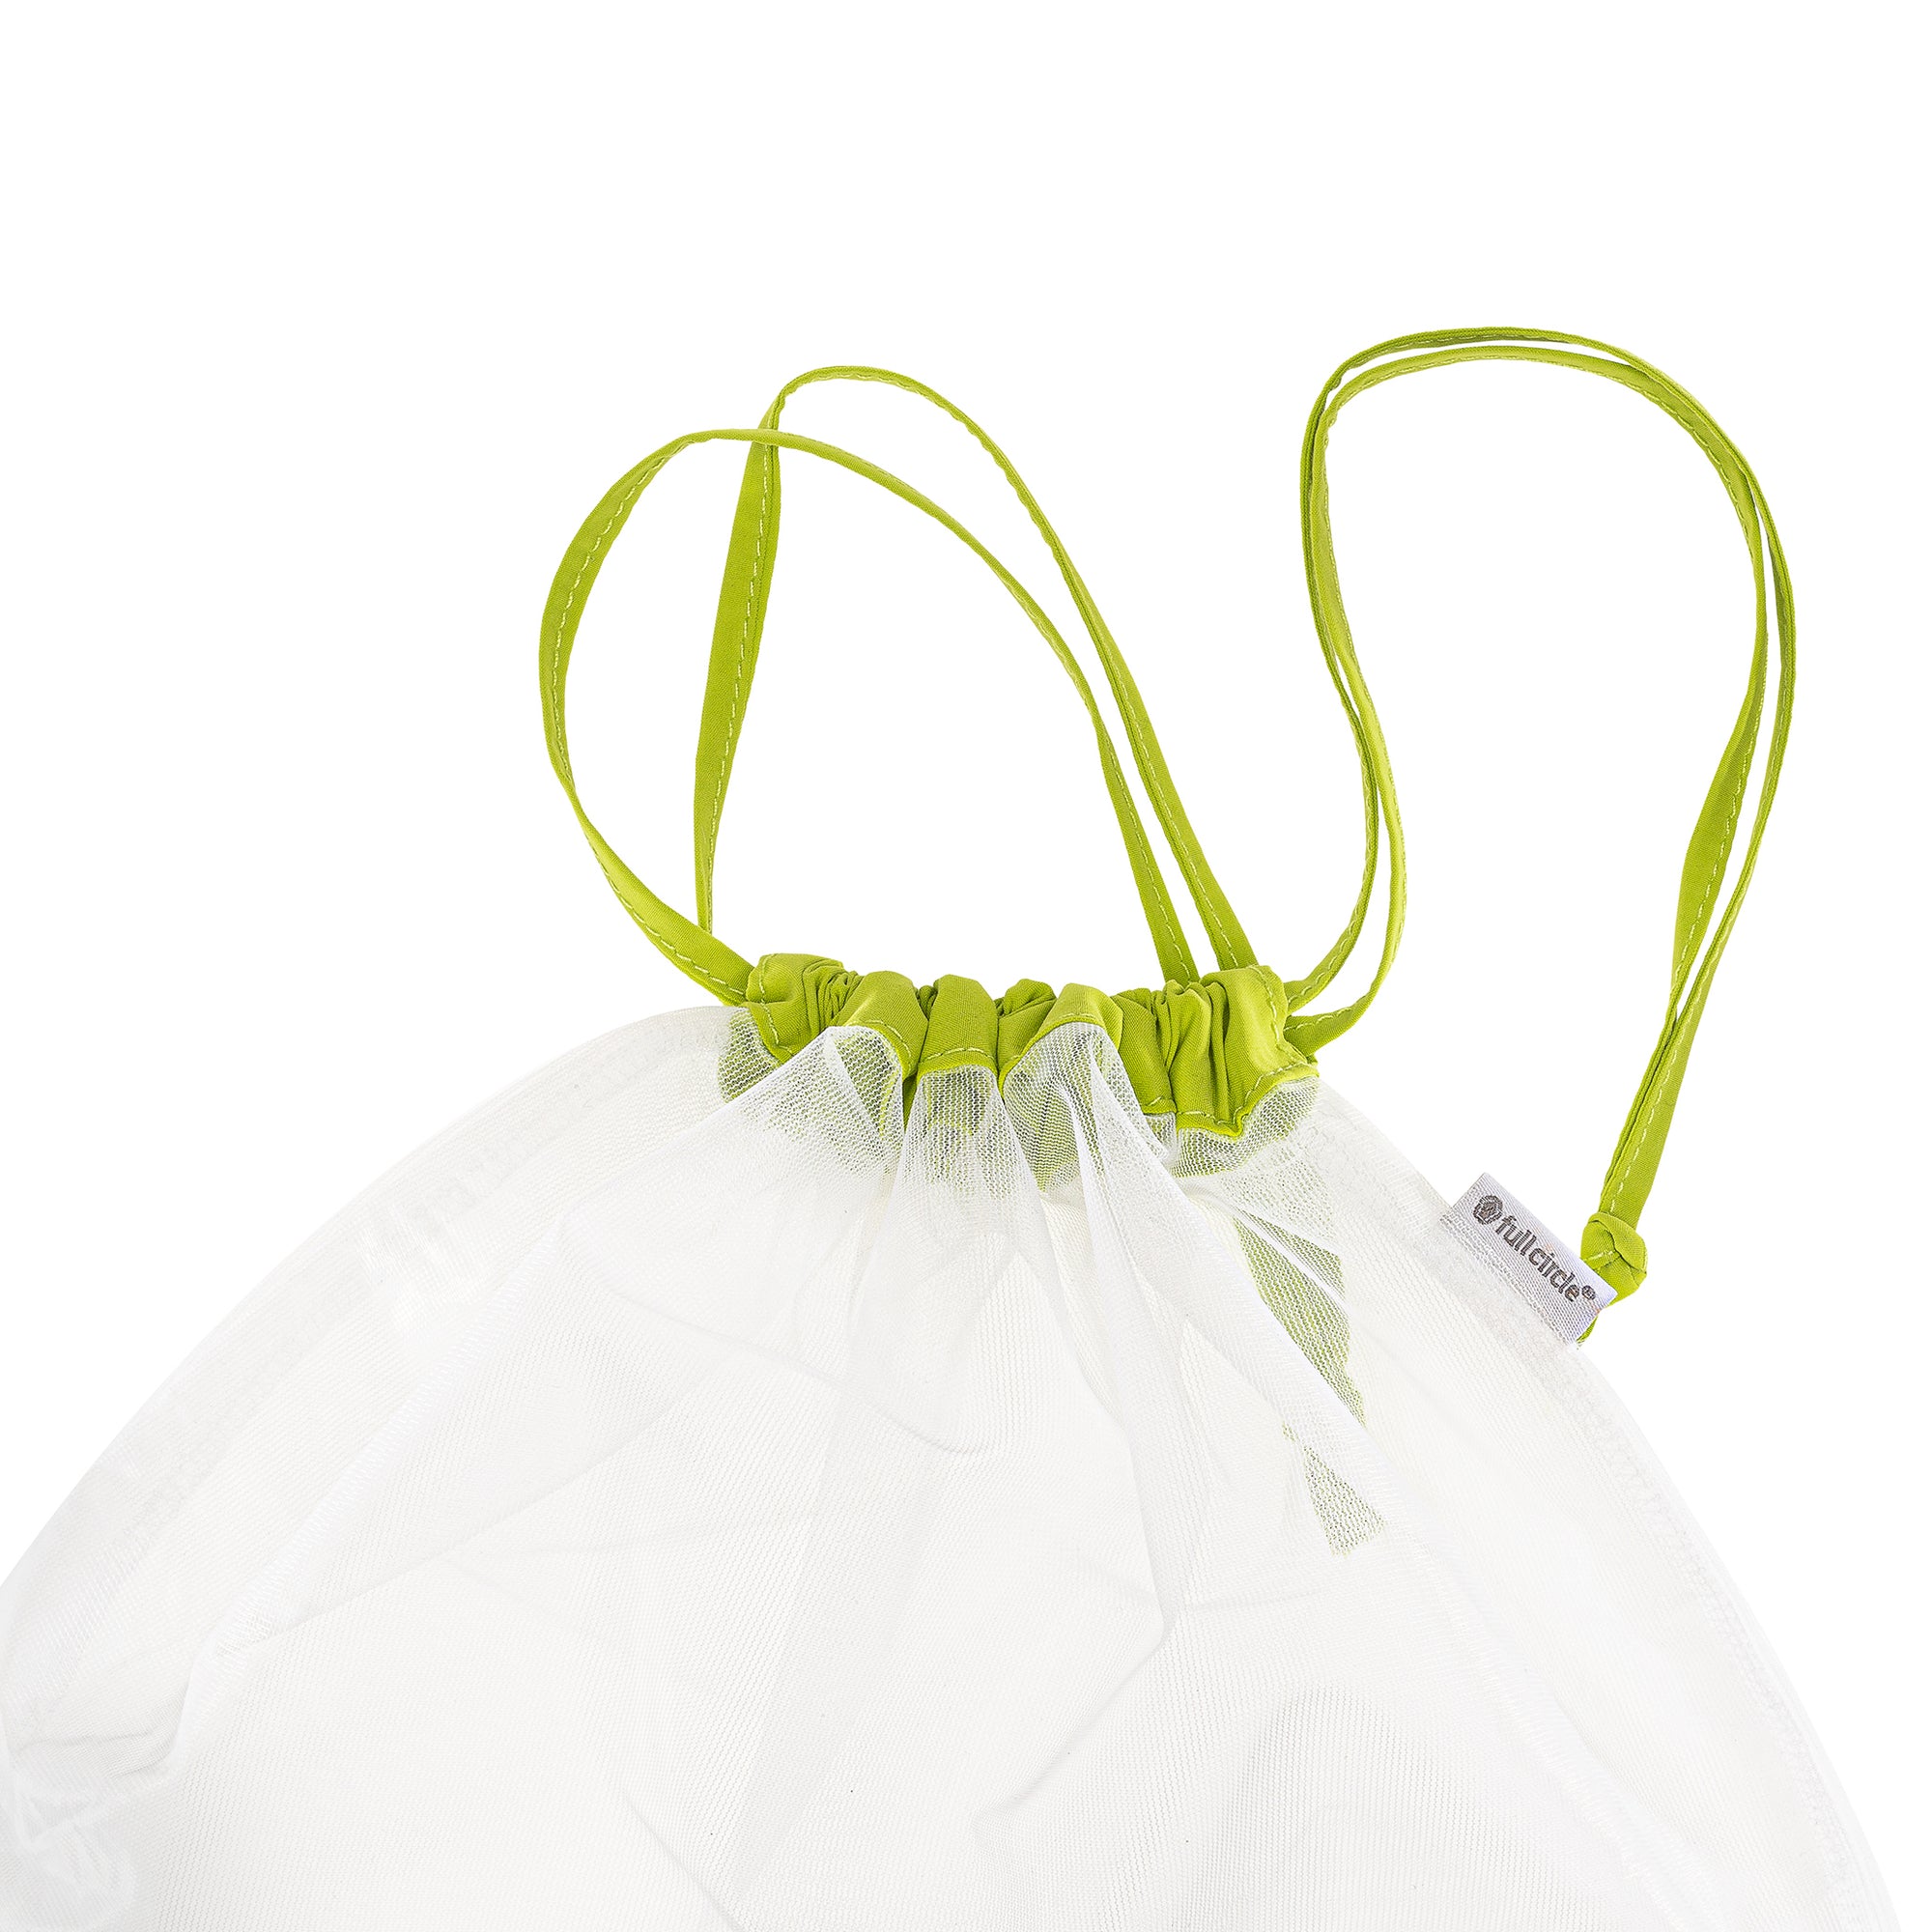 Full Circle Goodie Bags Reusable Mesh Produce Bags, Set of 5